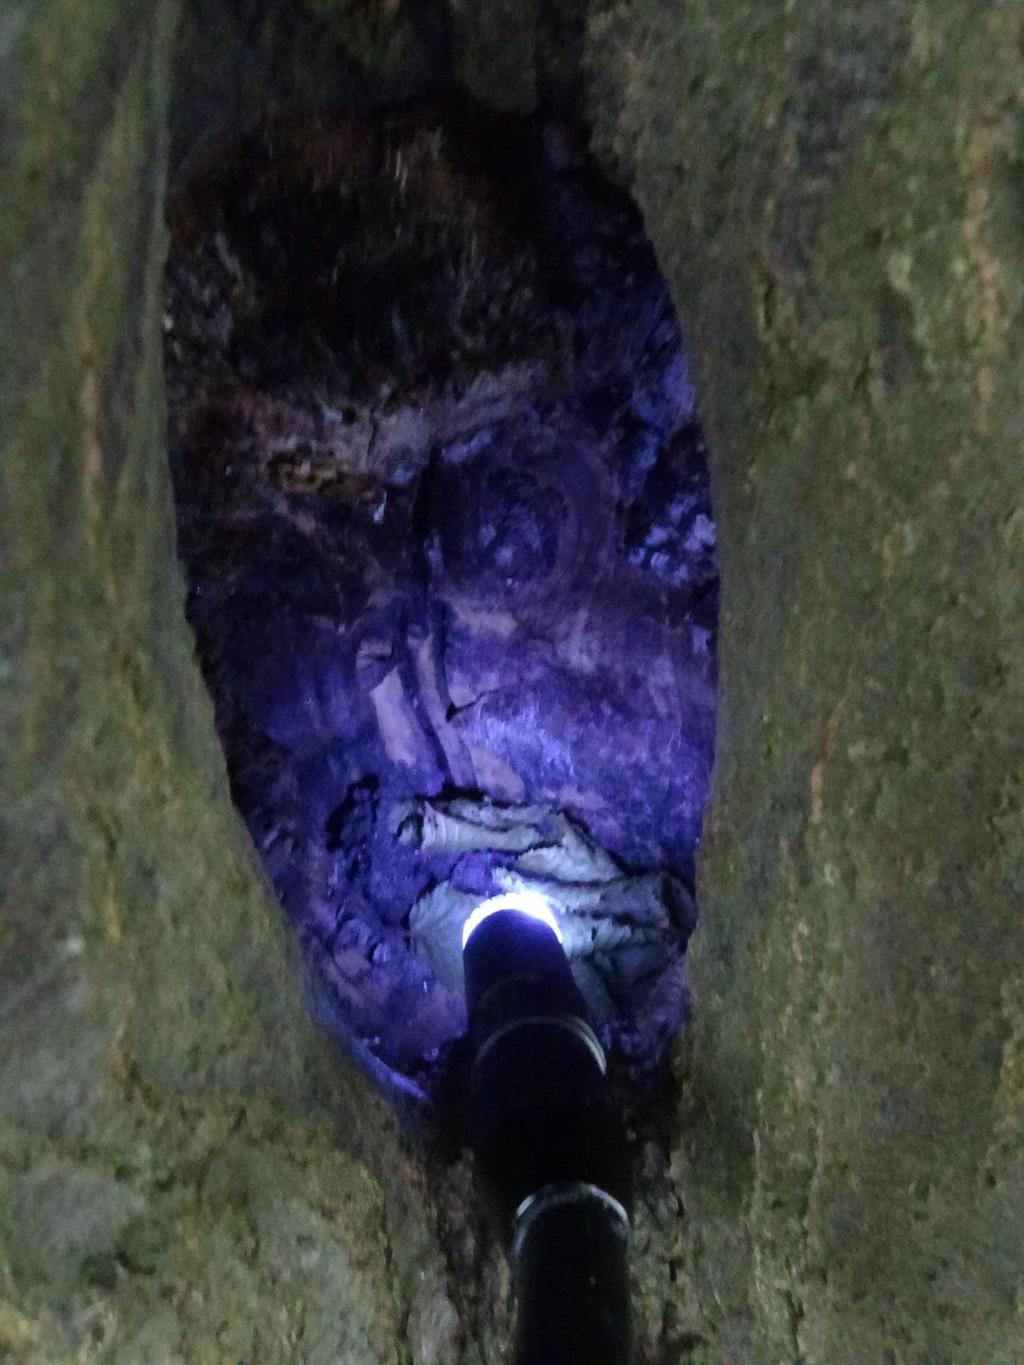 Abb. 9: Kontrolle einer Baumhöhle mit dem beleuchteten Kamerakopf des Endoskops Nachdem die einzelnen Aushöhlungen in den Bäumen detailliert untersucht worden sind und kein Besatz festgestellt werden